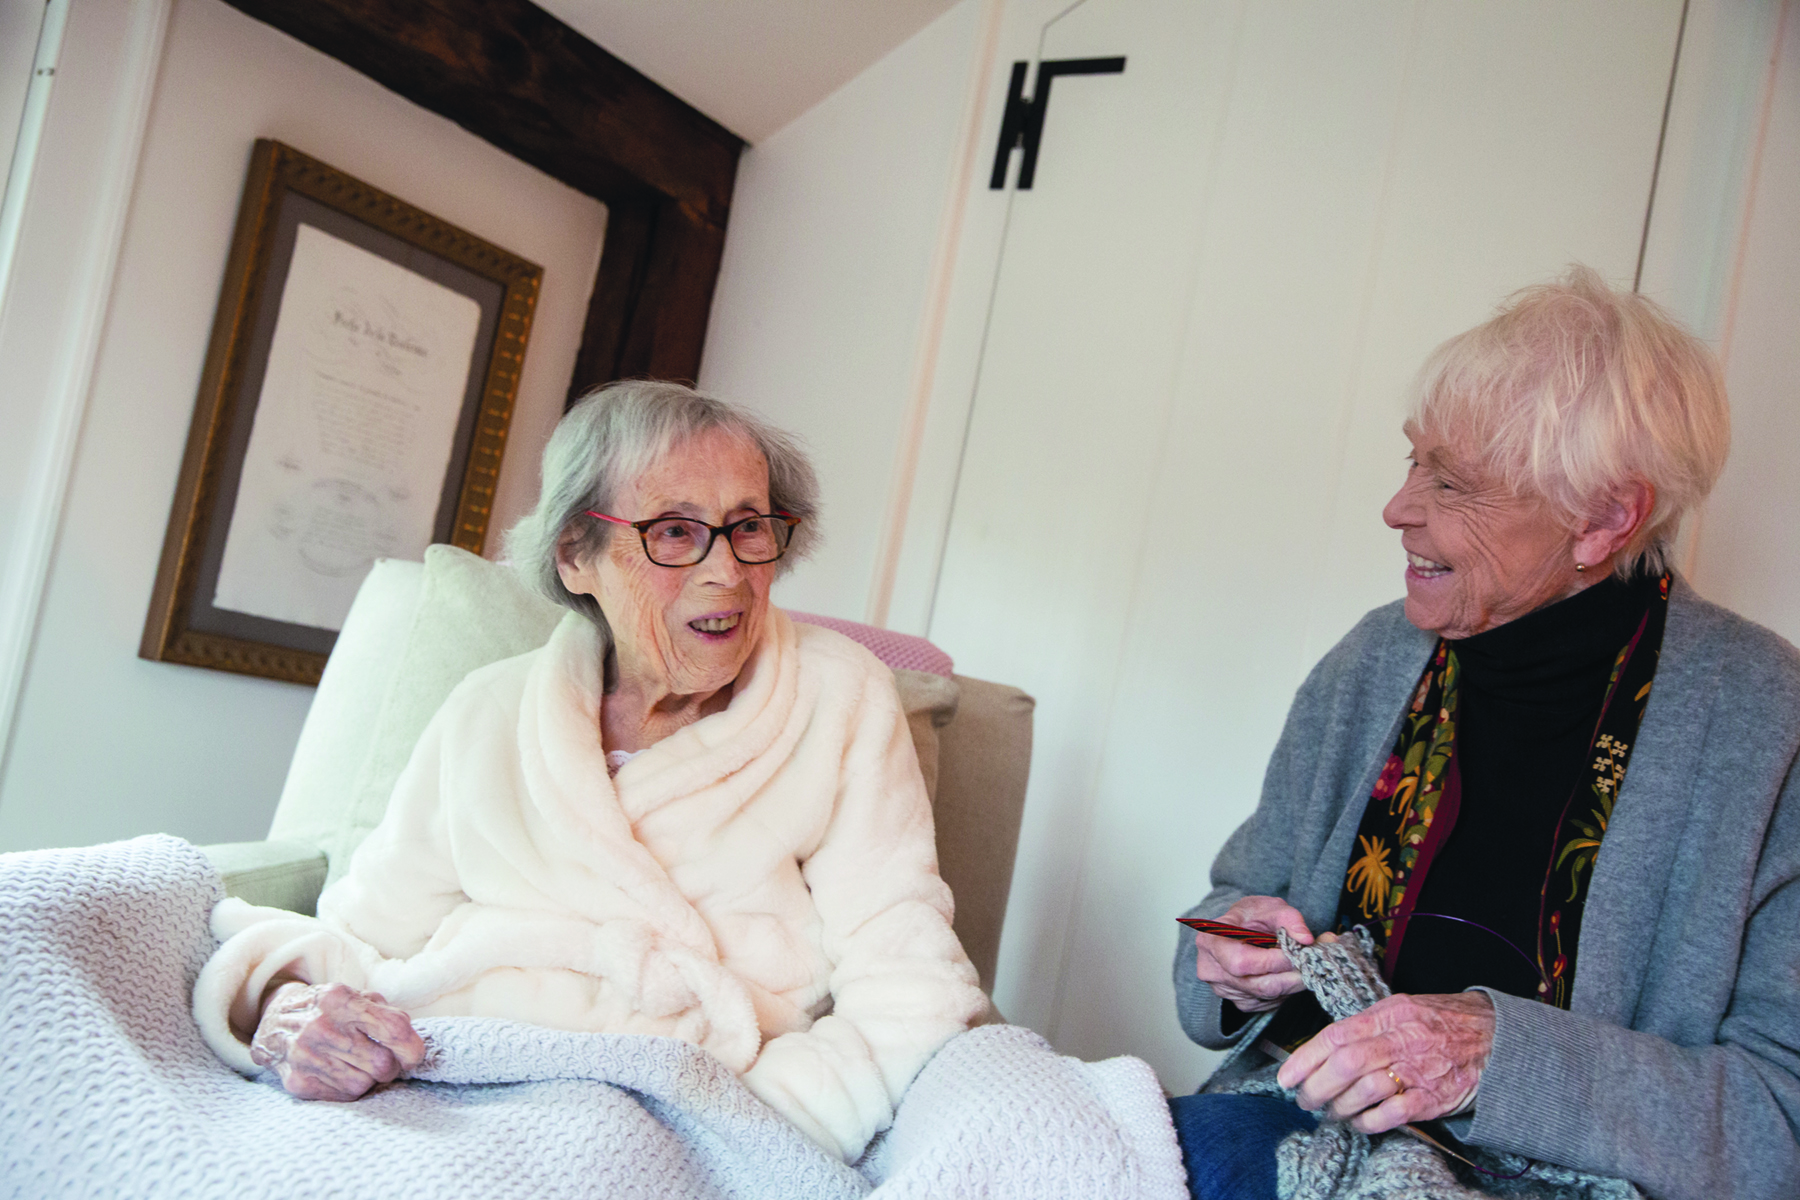 volunteer smiling with an elderly patient